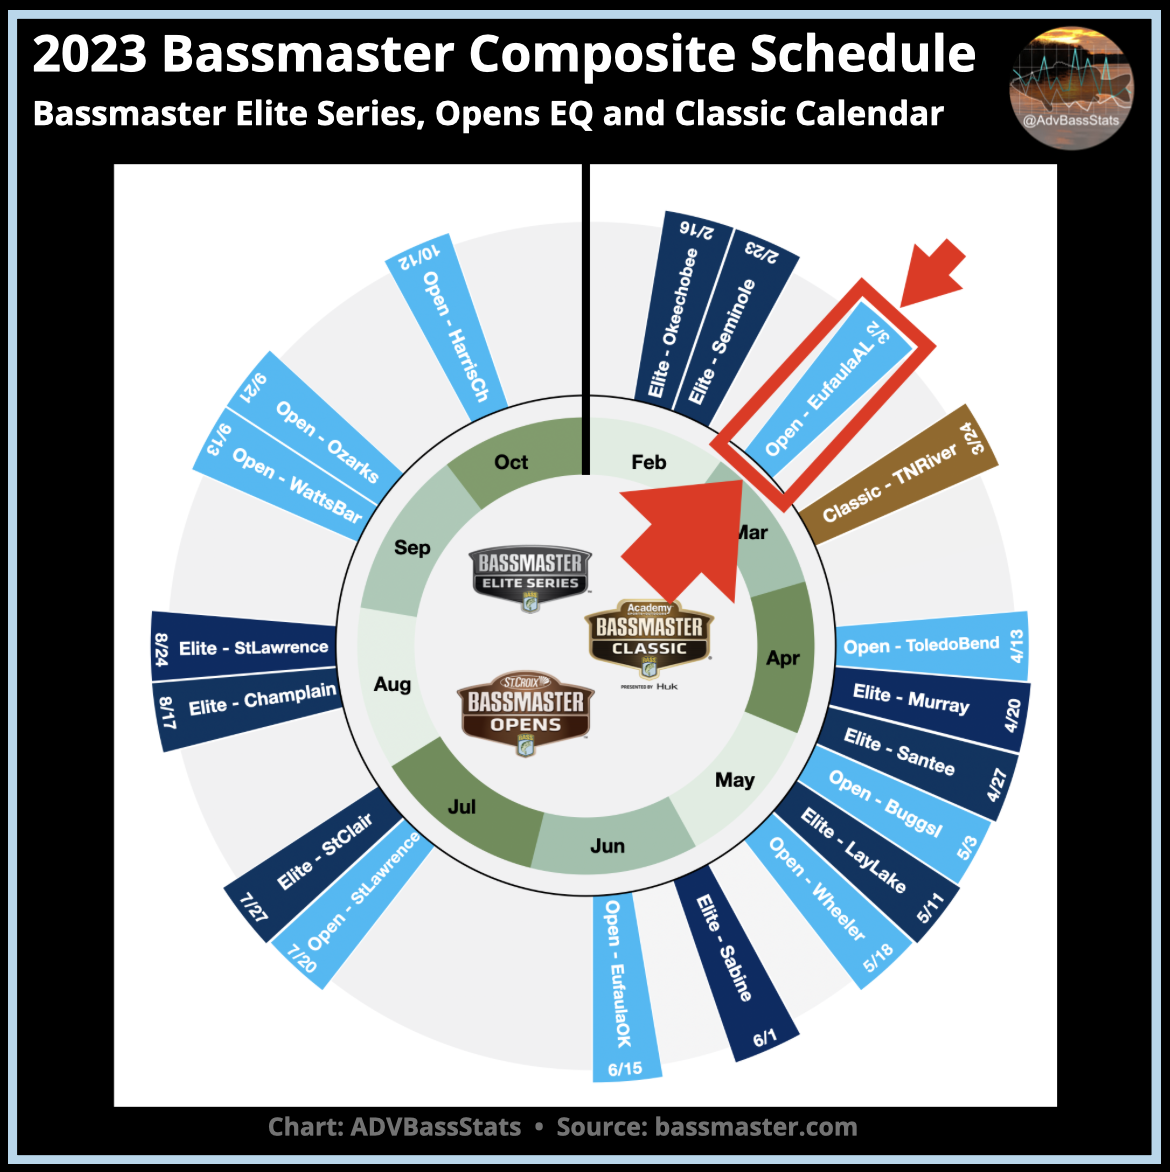 2023 St. Croix Bassmaster Open at Lake Eufaula Alabama - Bassmaster